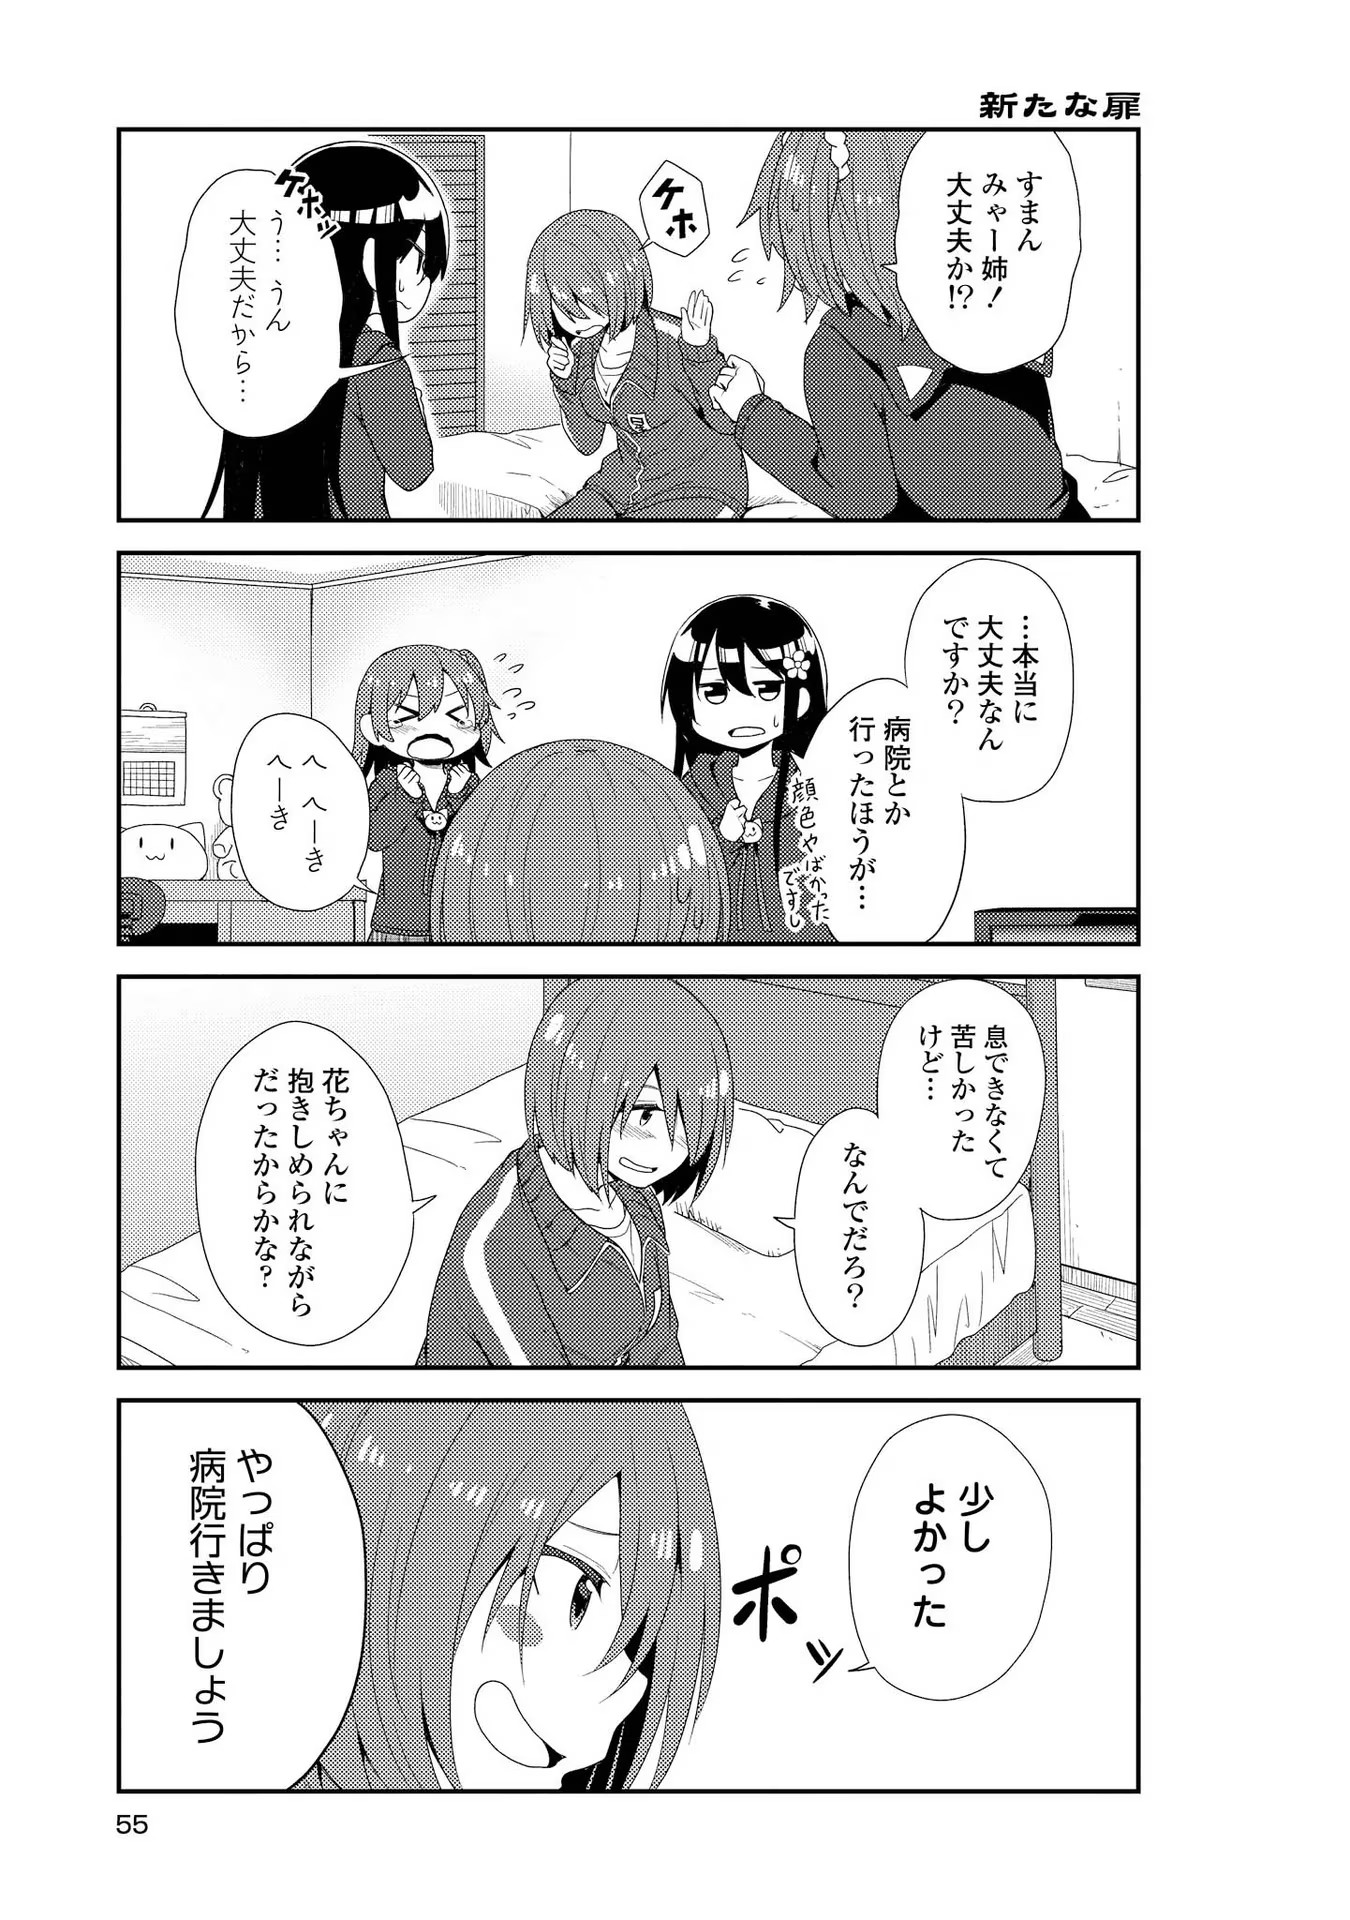 Watashi ni Tenshi ga Maiorita! - Chapter 3 - Page 11